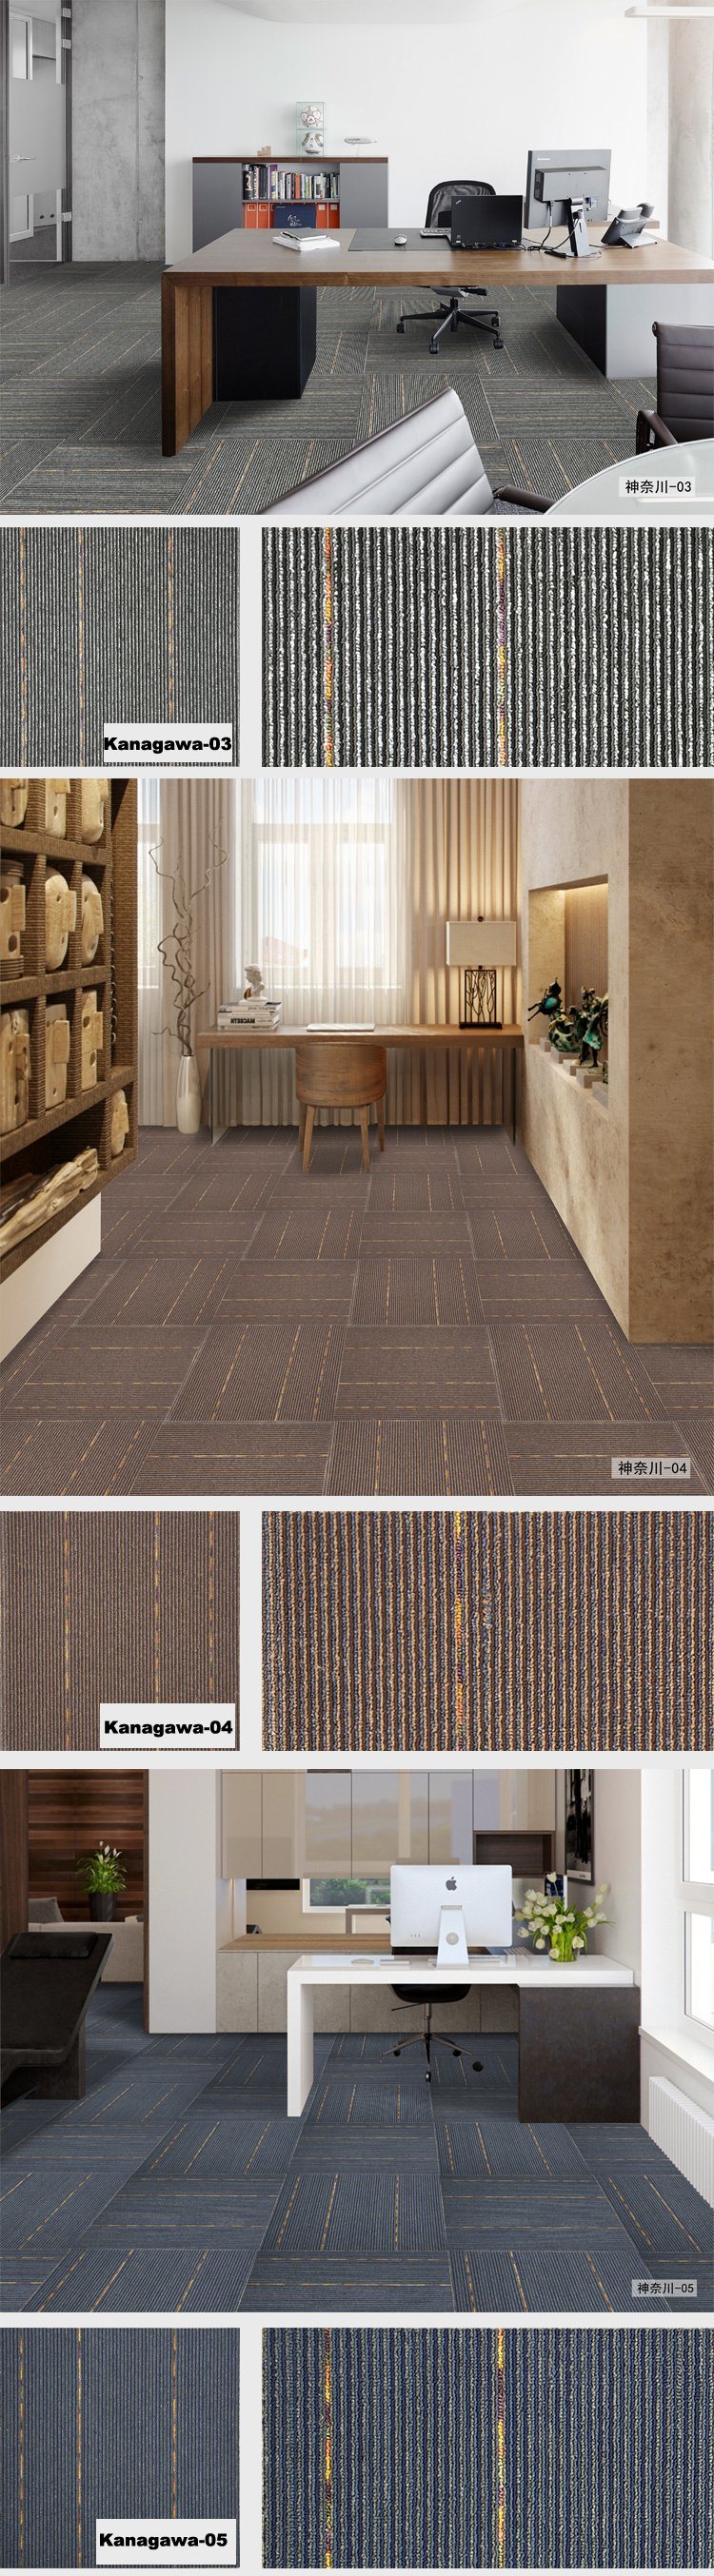 1/10 Kanagawa Ofiice/Hotel/House Flooring Modular Carpet with PVC Back